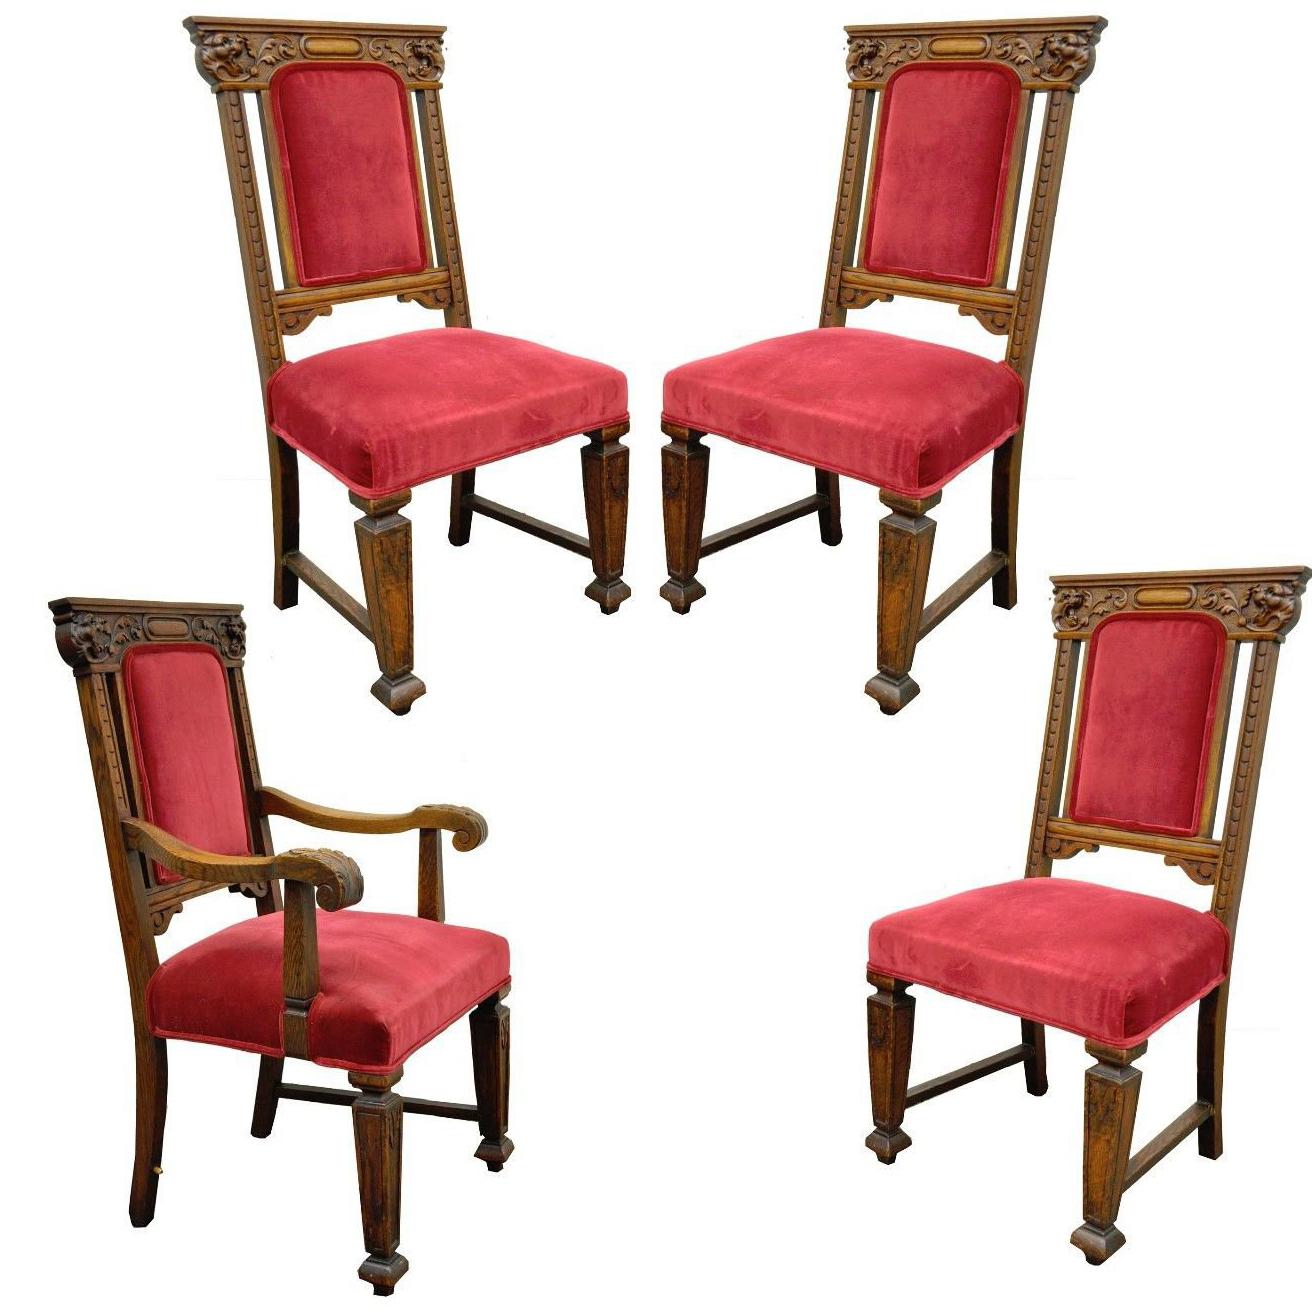 Vier antike Renaissance-Revival-Esszimmerstühle mit geschnitztem Löwen aus Eiche, vier Beistellstühle